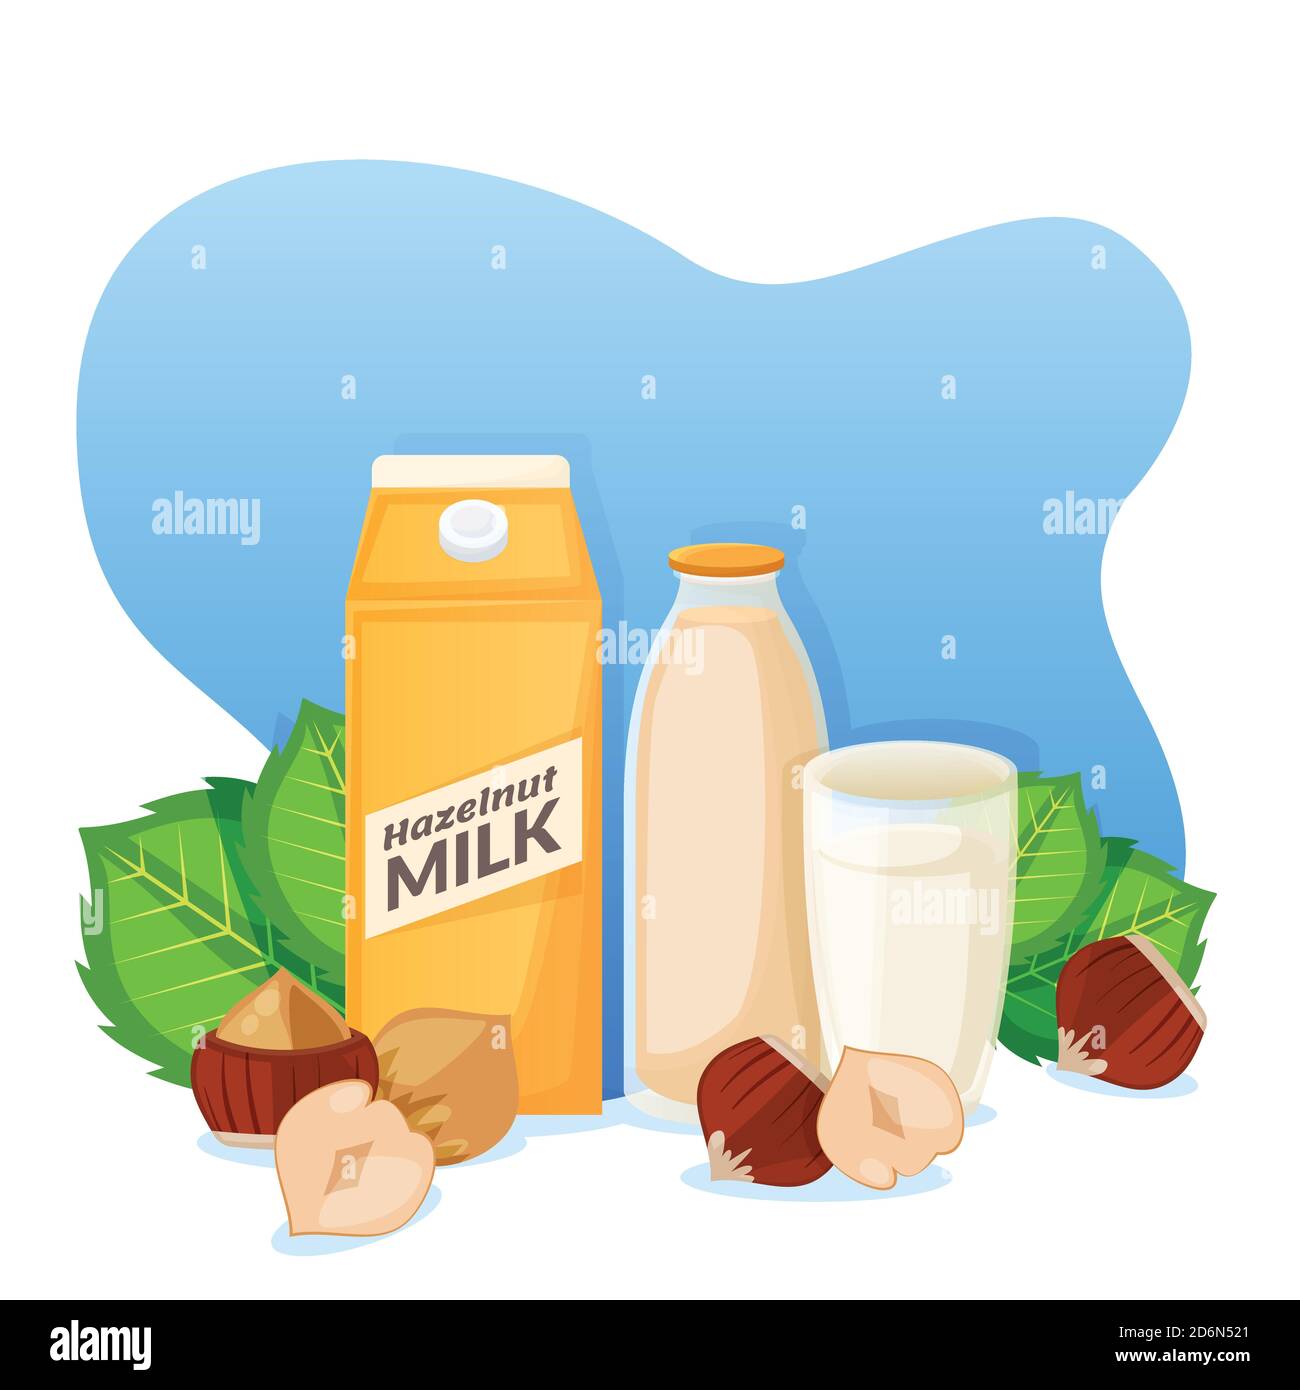 Haselnussmilch in Verpackung, Flasche und Glas, Vektor-flache Cartoon-Illustration. Gesunde vegane Ernährung Getränk. Hausgemachte frische natürliche Getränke Label o Stock Vektor